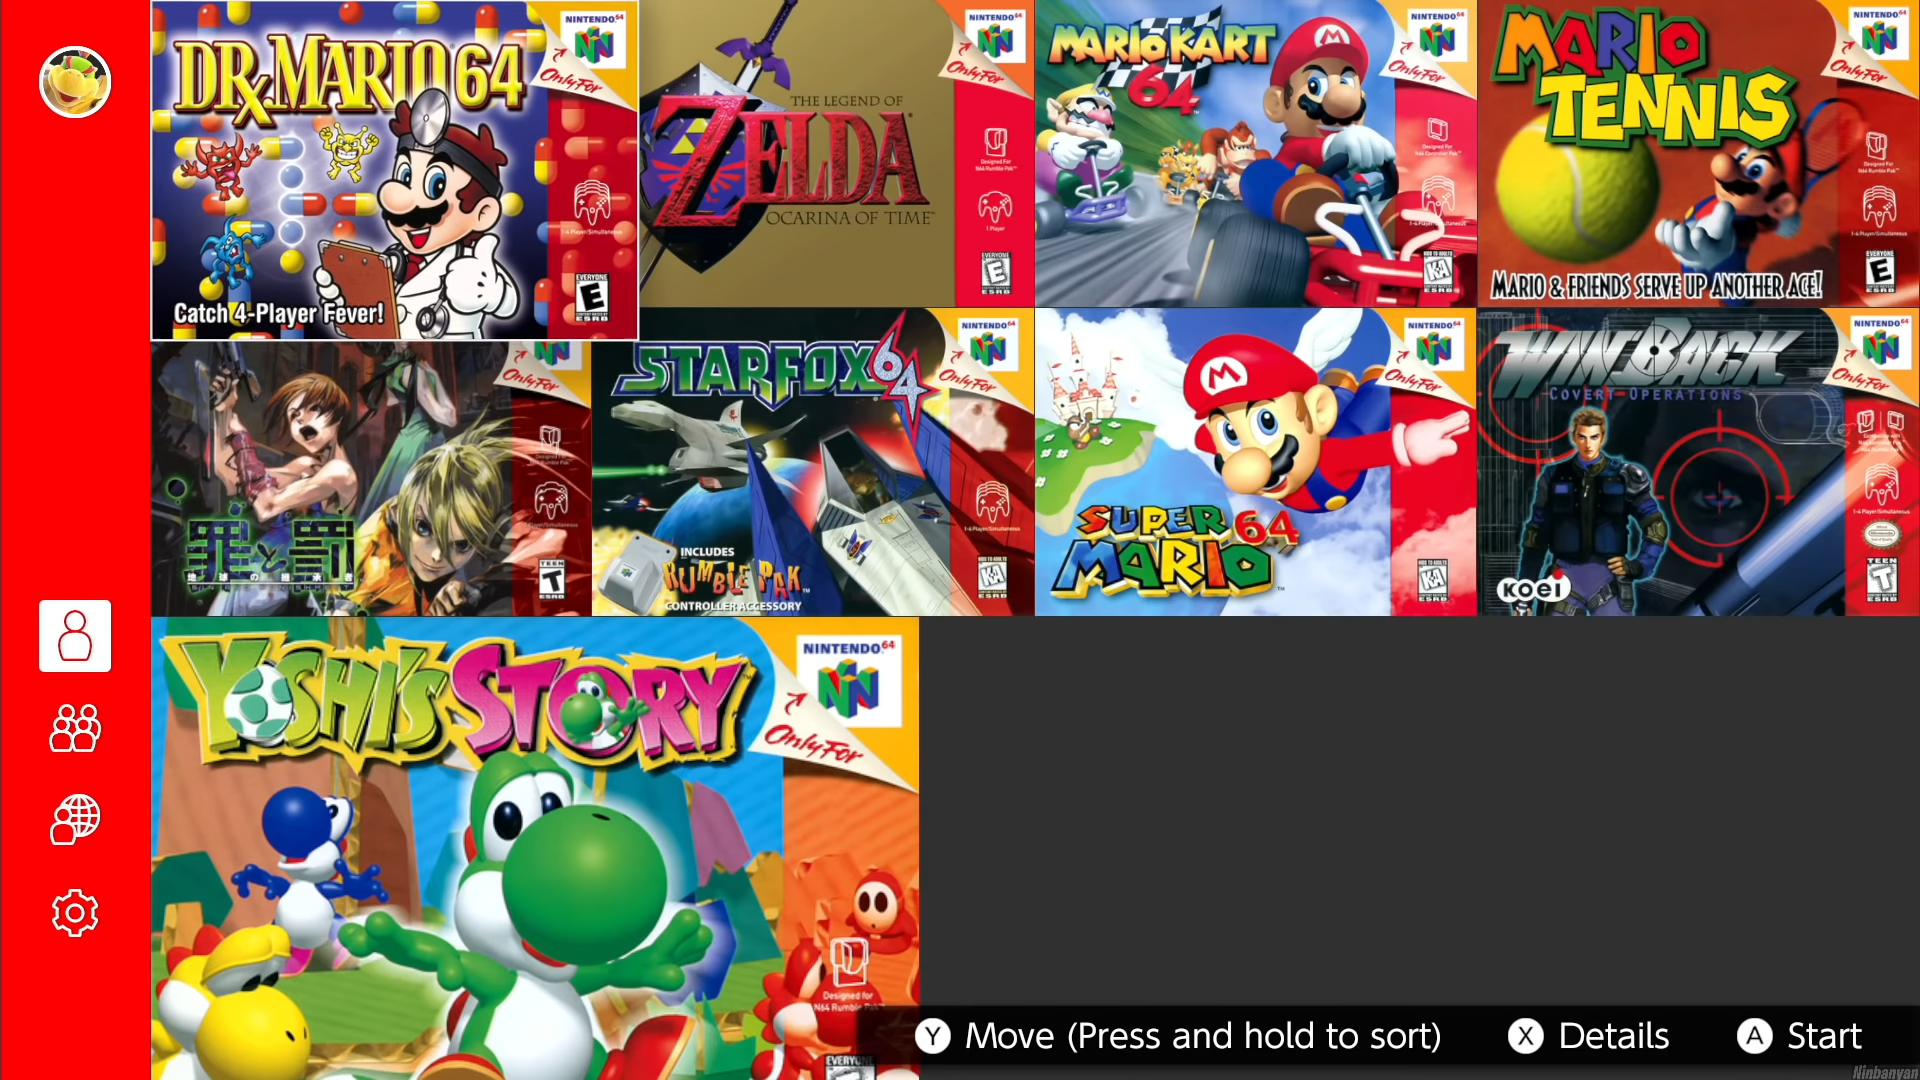 længes efter uregelmæssig hobby Nintendo 64 - Nintendo Switch Online | Nintendo | Fandom